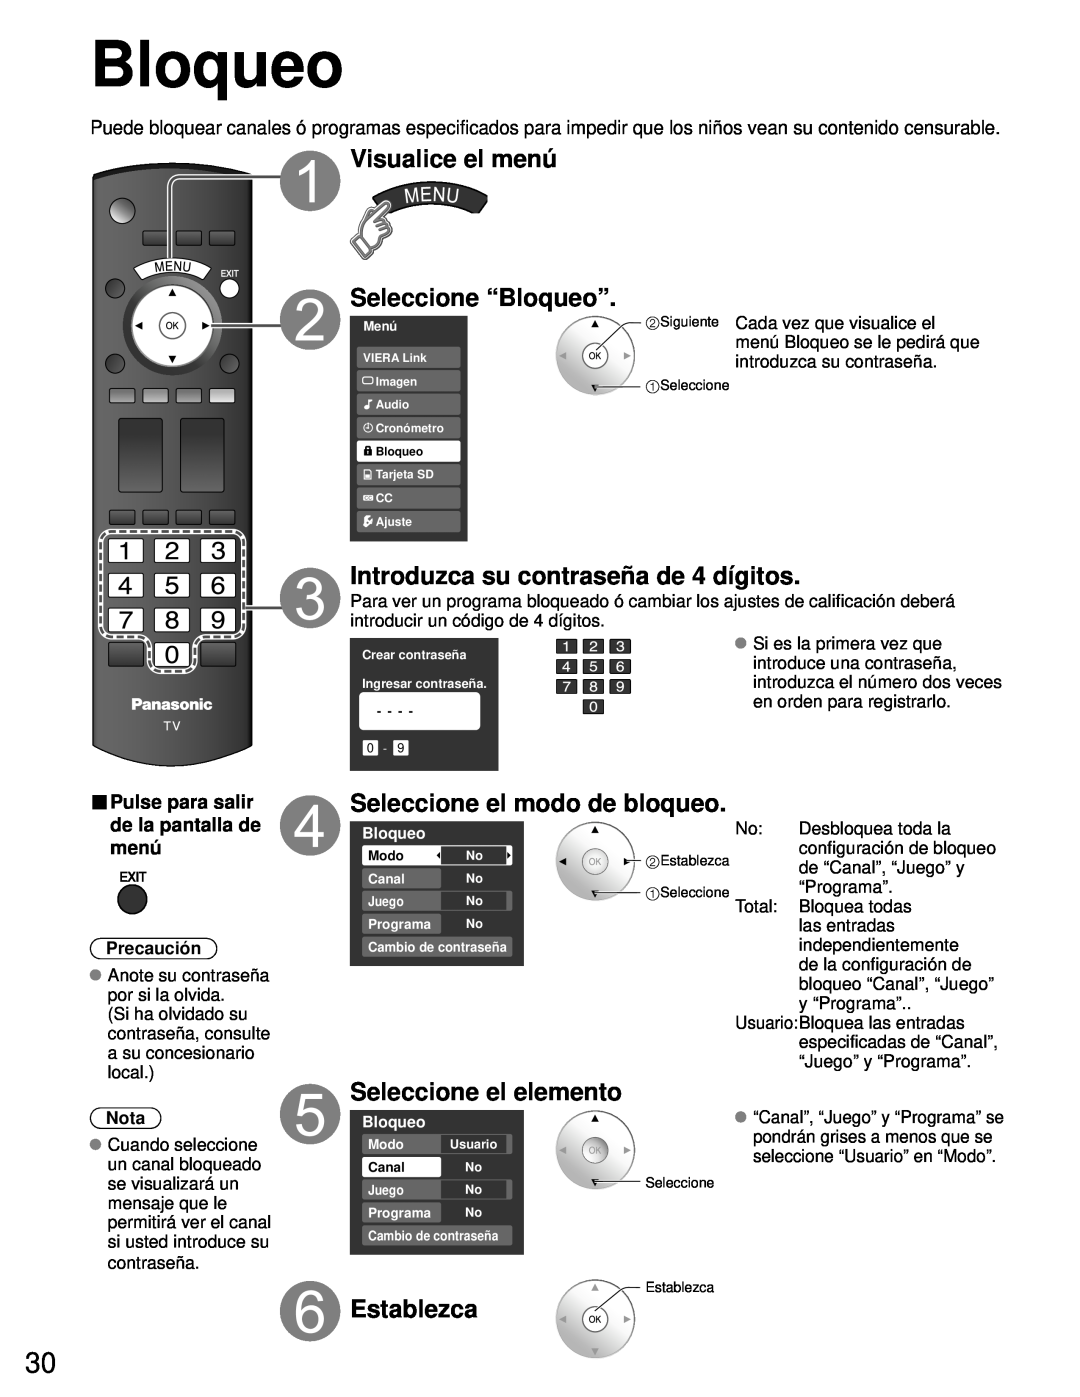 Panasonic TH-50PZ80U Visualice el menú Seleccione “Bloqueo”, Introduzca su contraseña de 4 dígitos, Establezca, Nota 